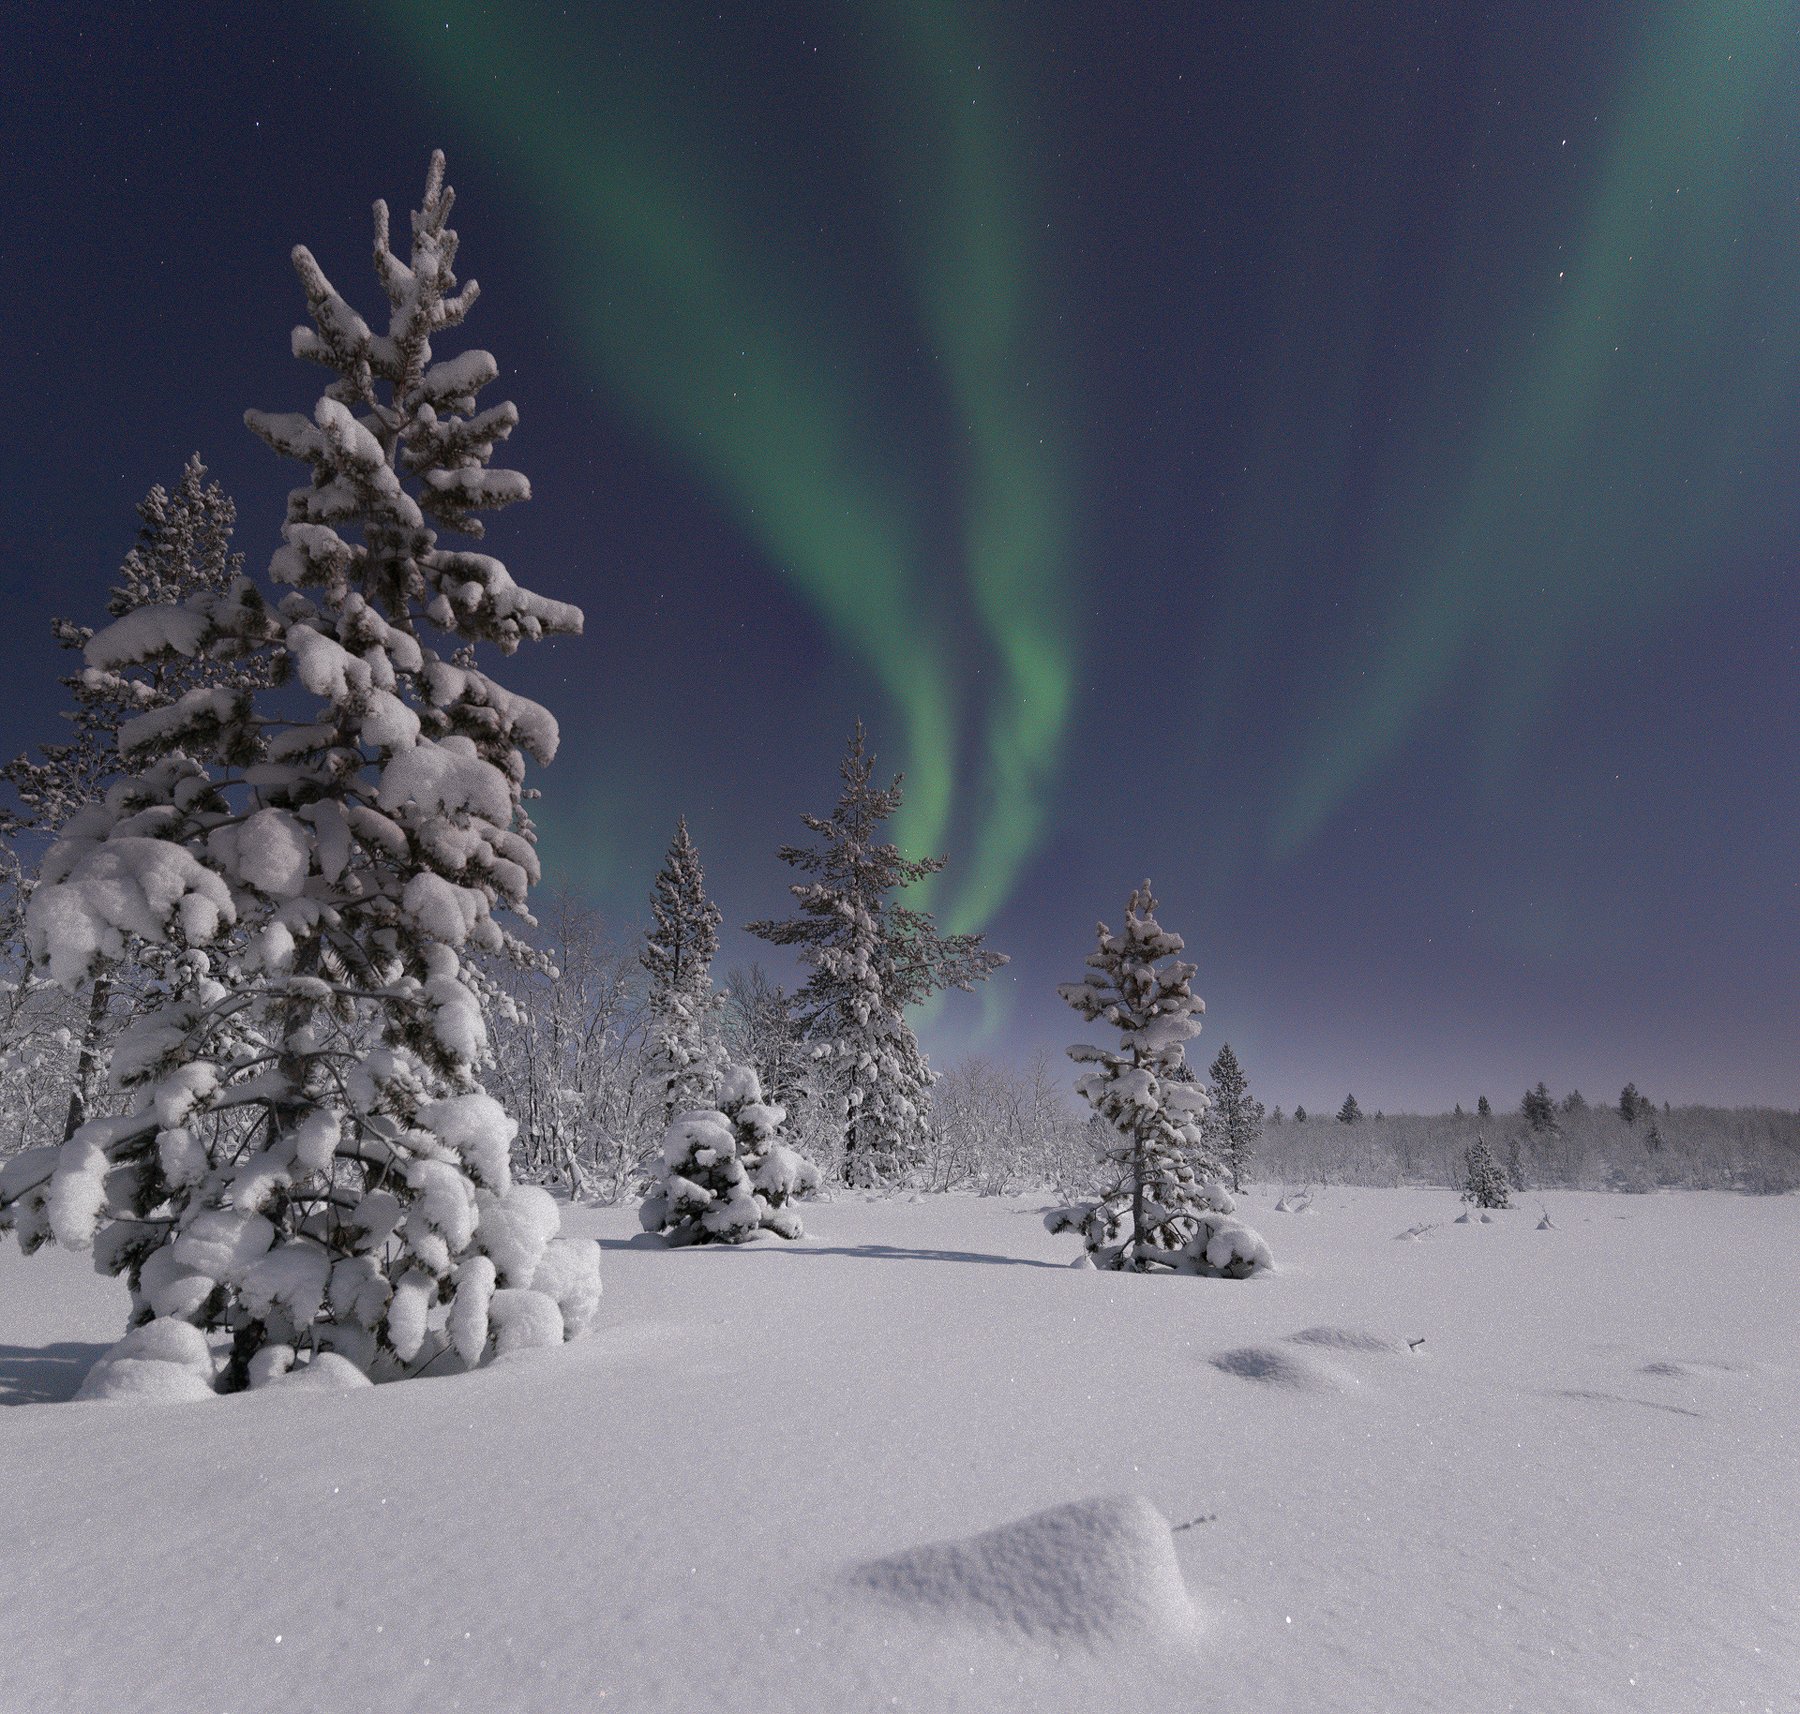 Aurora borealis, северное сияние, Кольский полуостров, Анастасия Малых